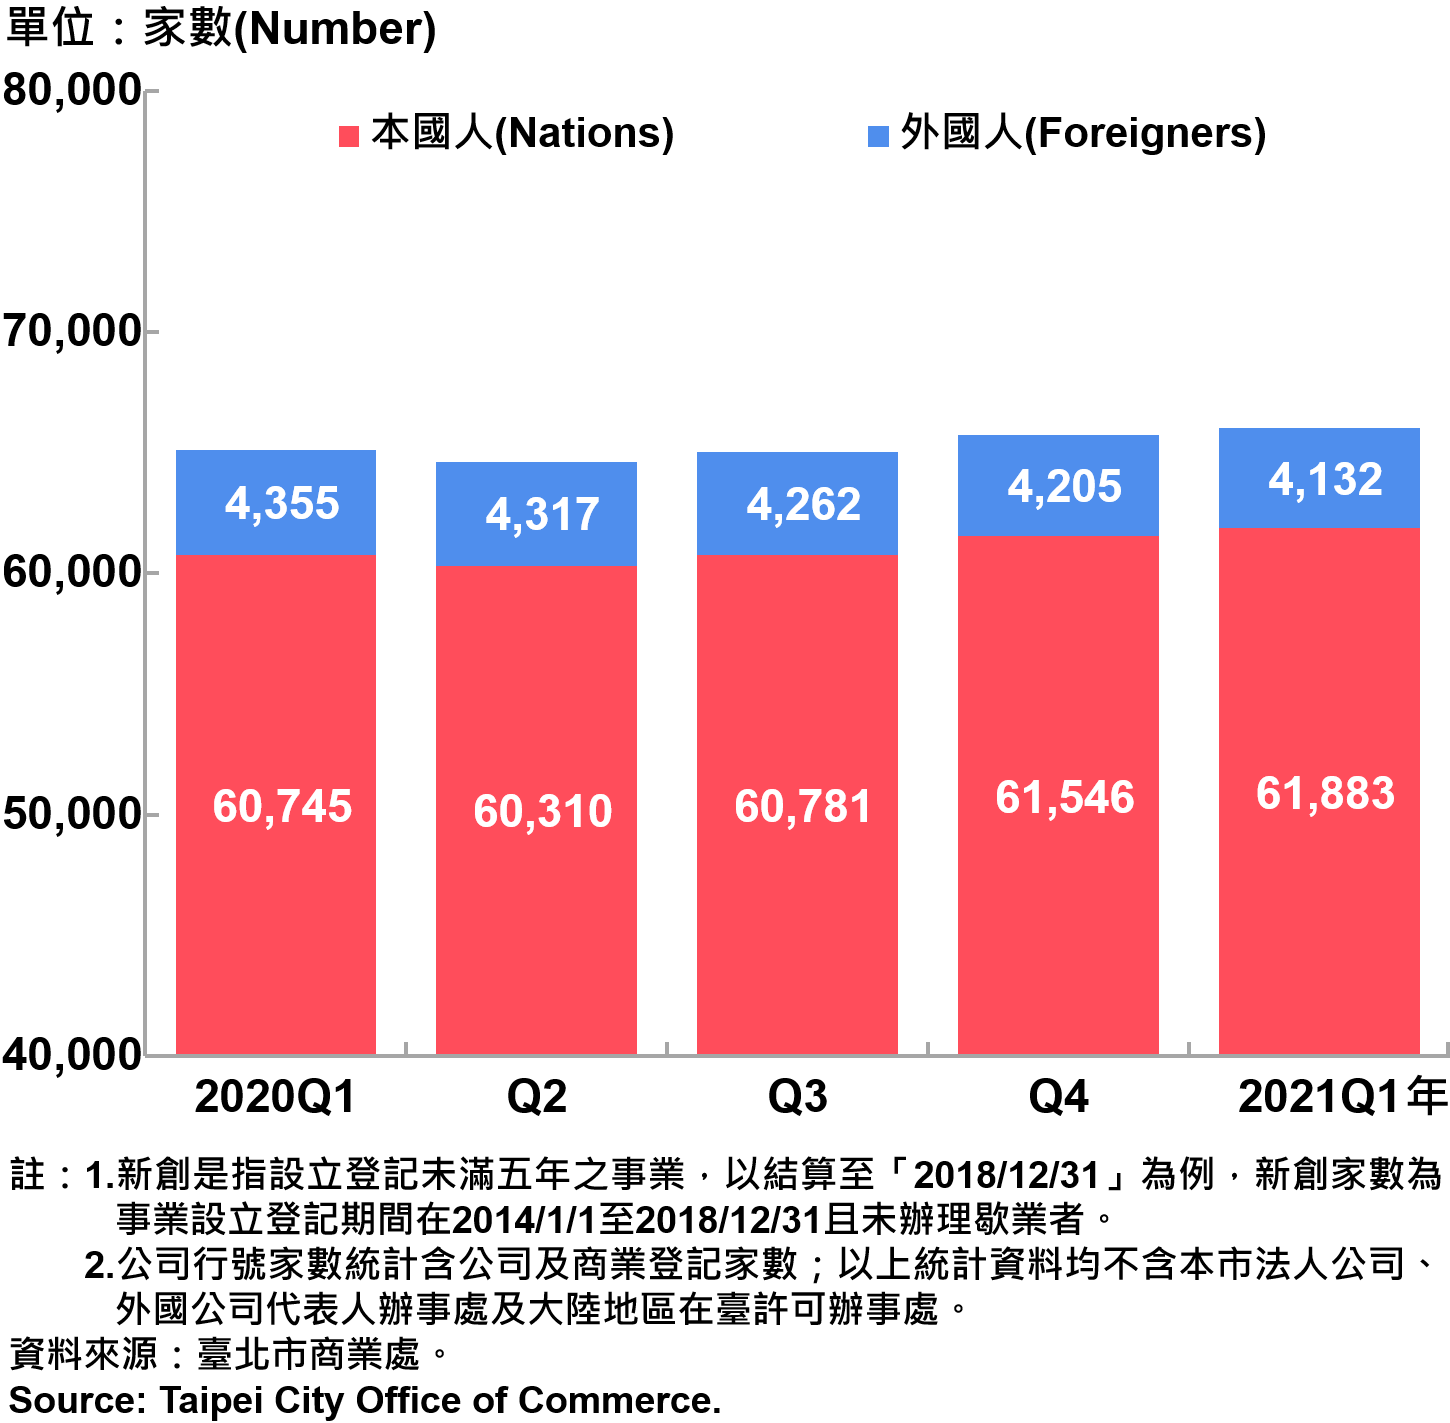 臺北市新創公司行號負責人-本國人與外國人分布情形-現存家數—2021Q1 Responsible Person of Newly Registered Companies In Taipei City by Nationality - Number of Current—2021Q1